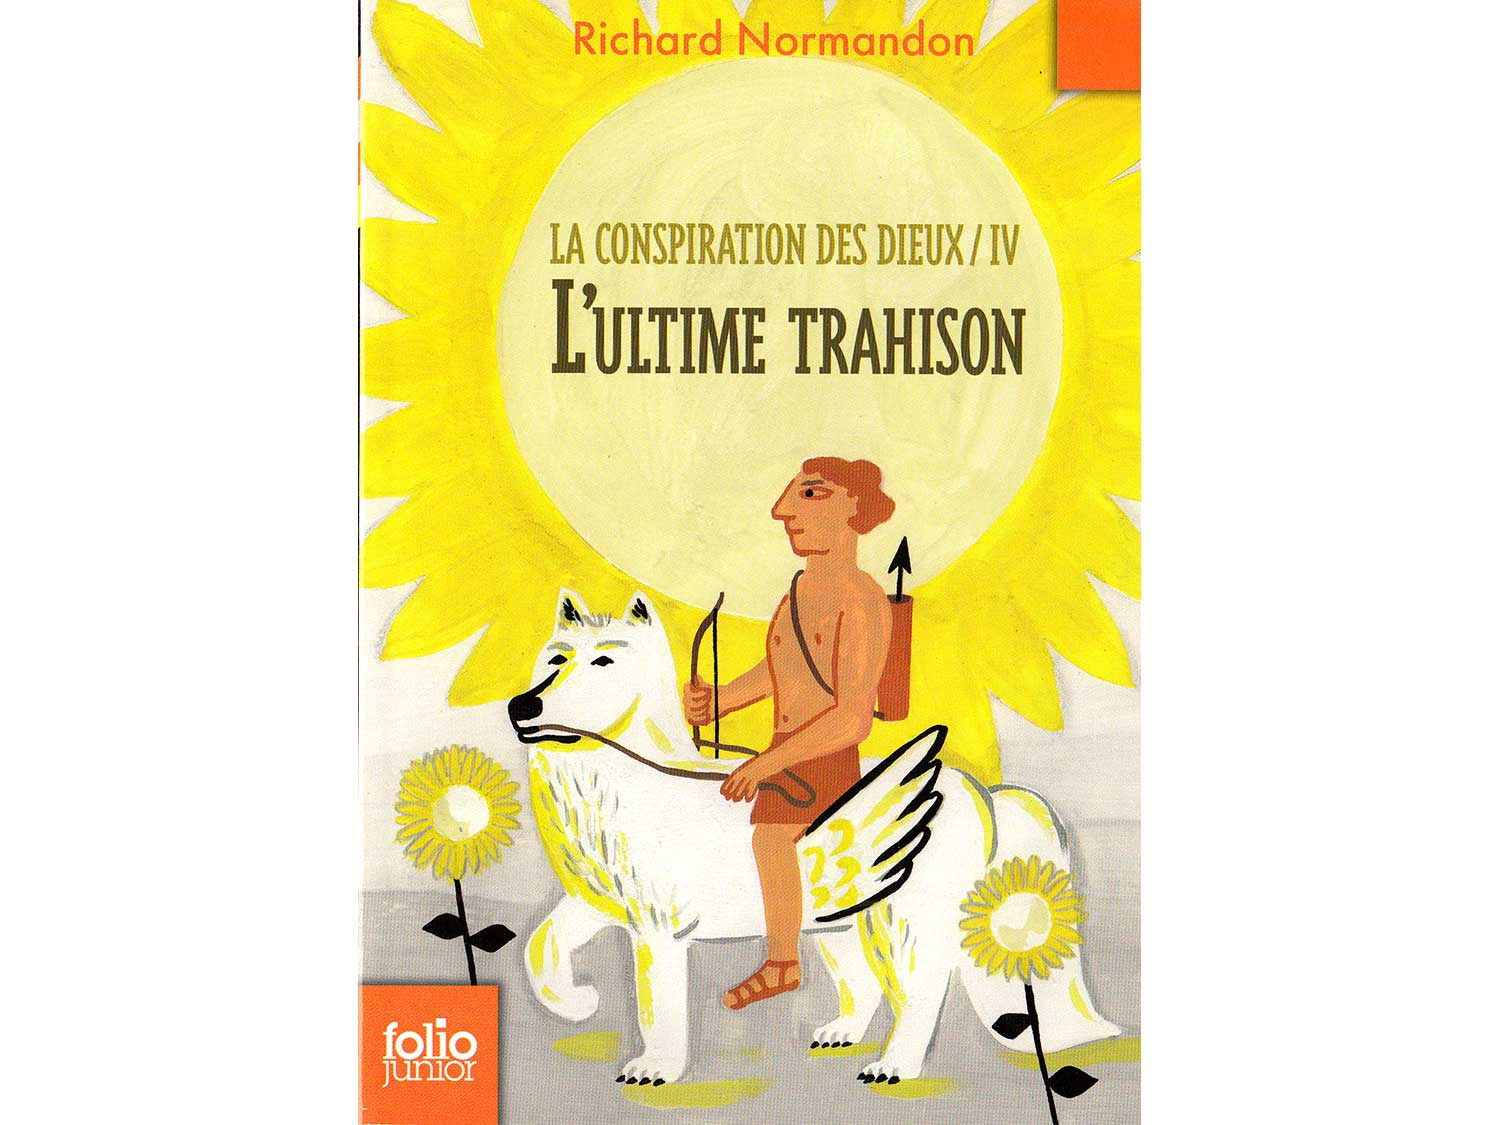 La conspiration des dieux - Richard Normandon / © Magali Bardos Gallimard Folio junior illustration couverture gouache jaune soleil